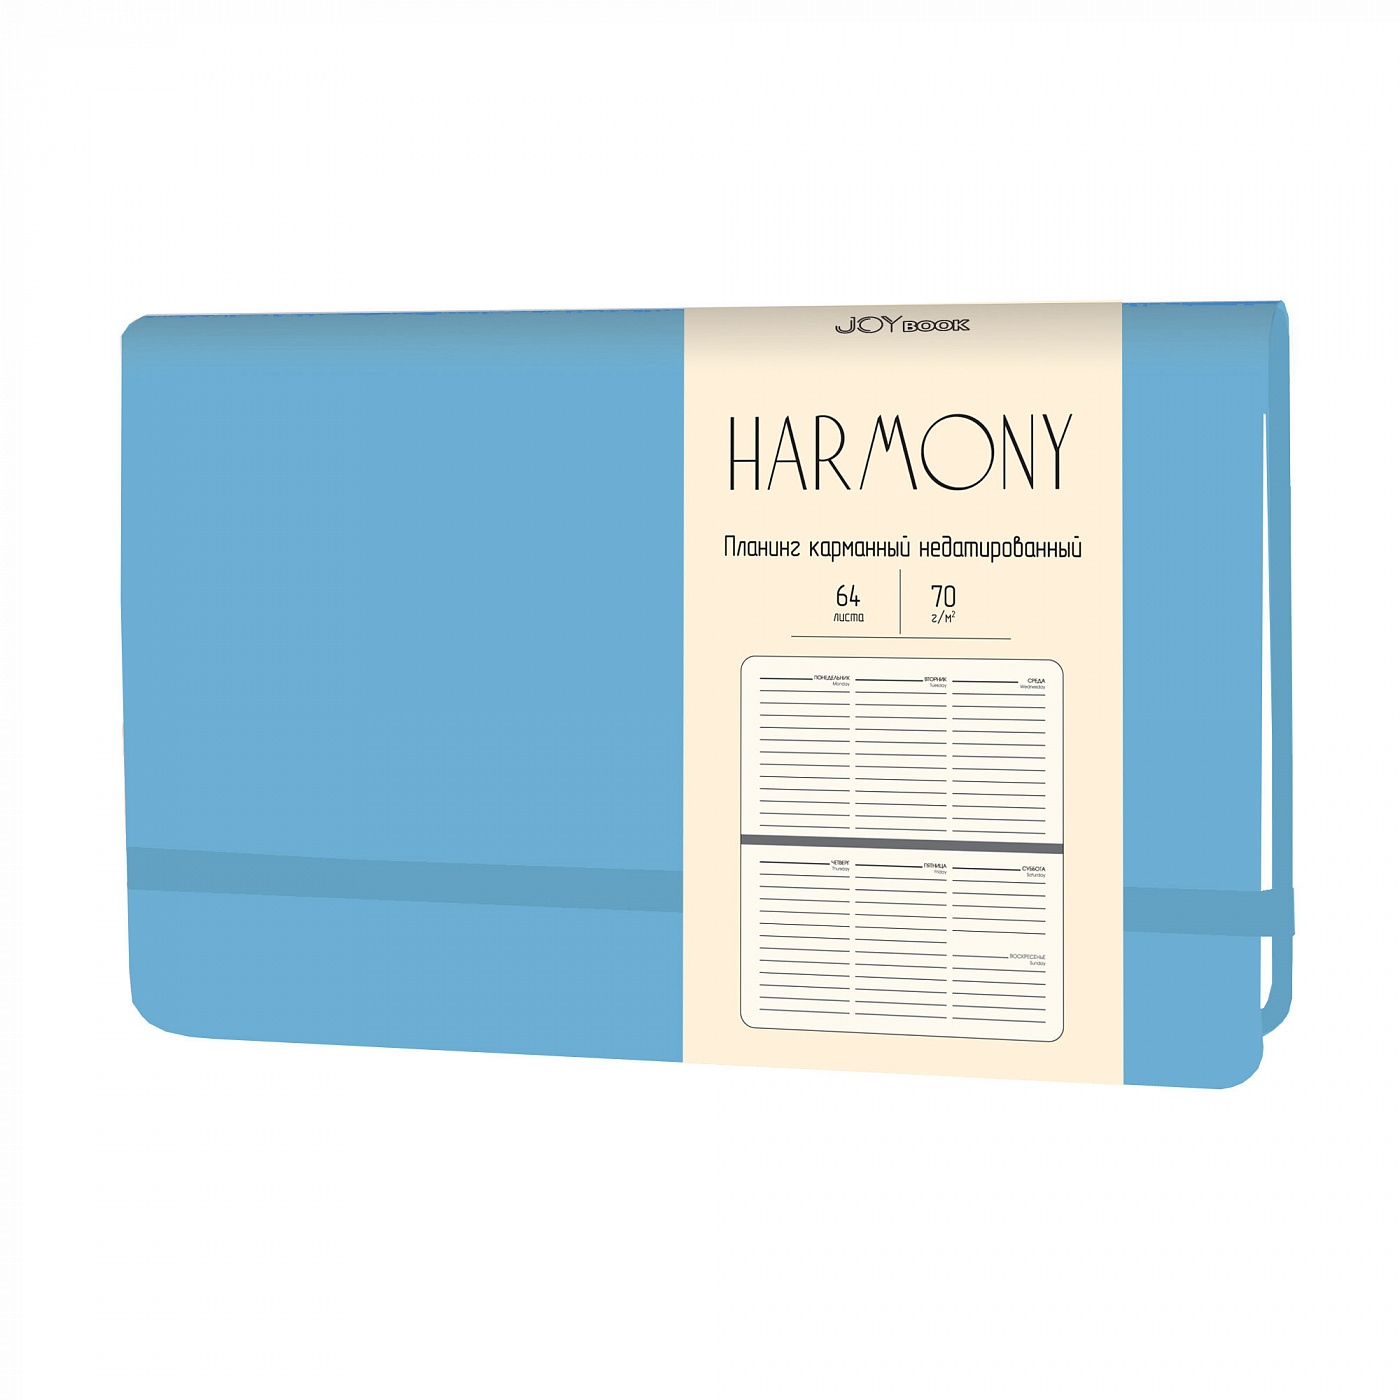 Планинг карманный недатированный Harmony Голубой иск. кожа, 64 л, 70 г